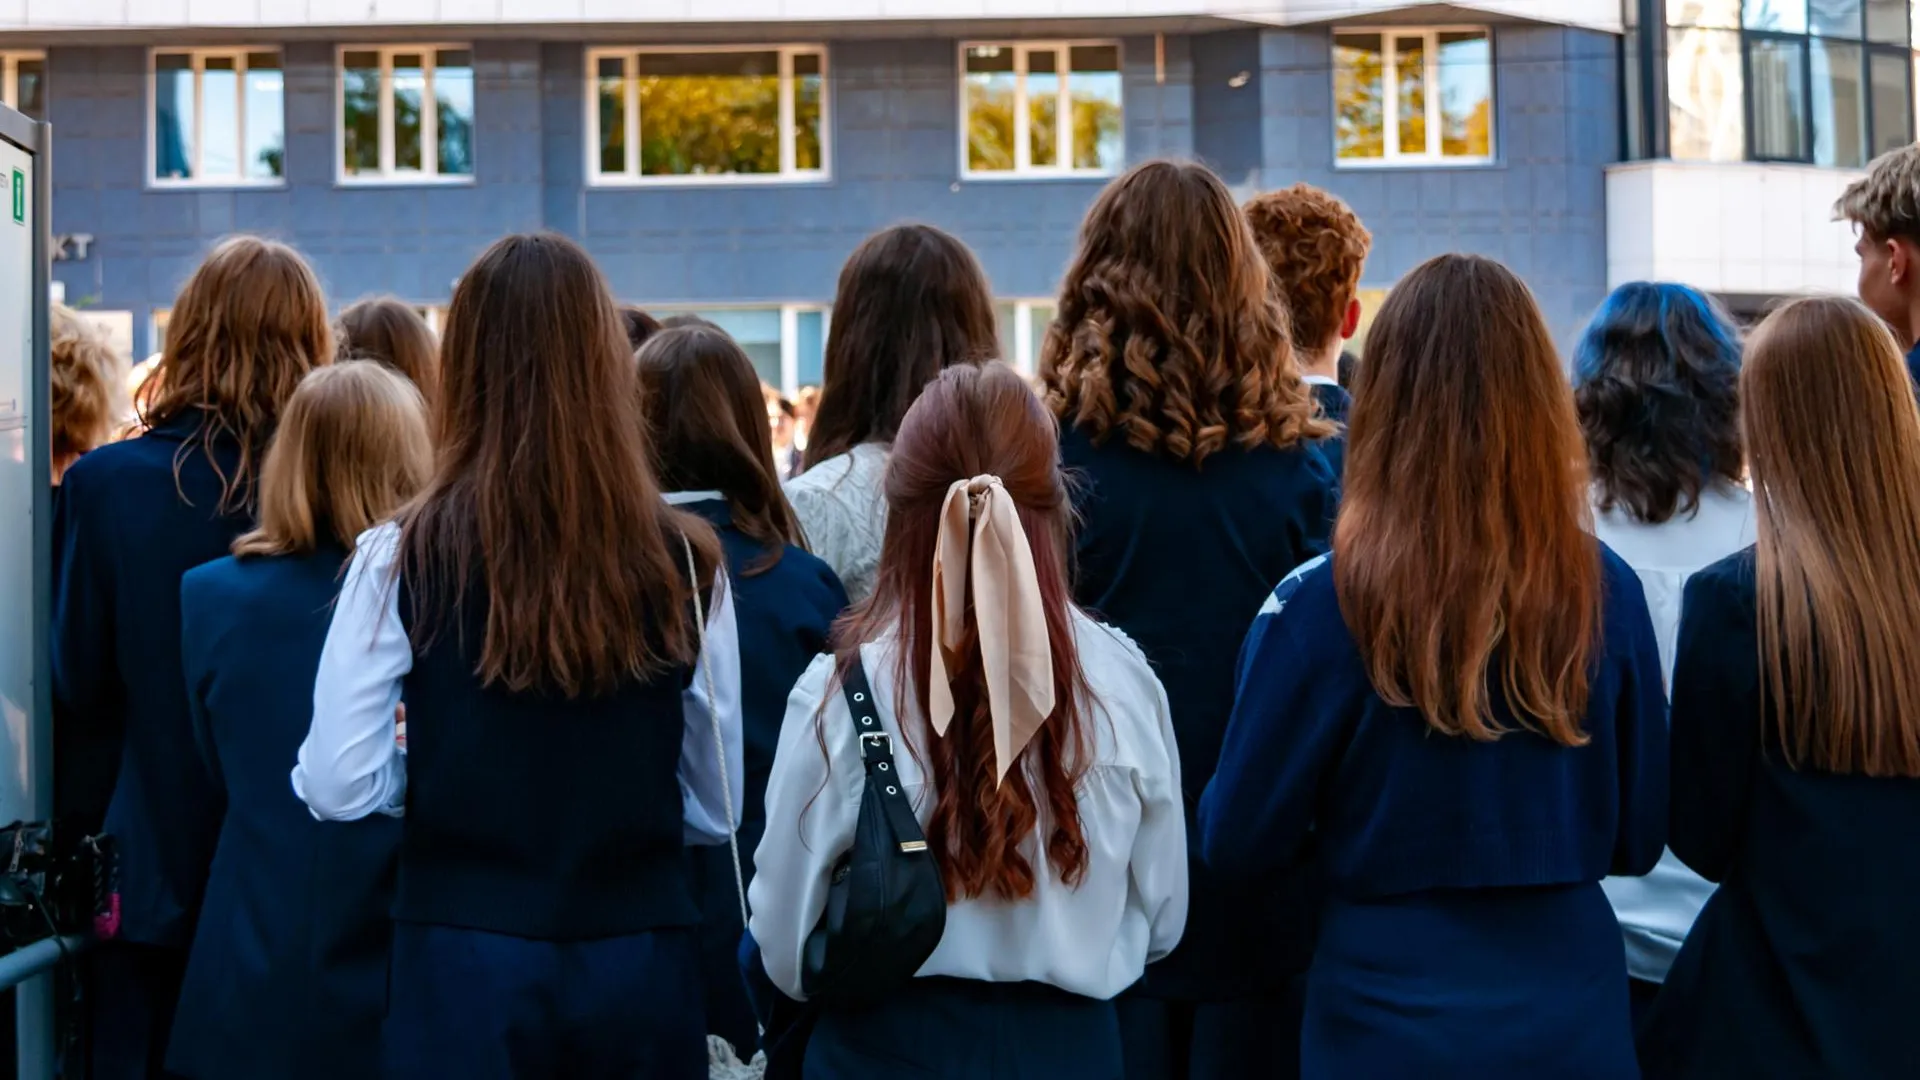 Старшеклассницы на учебной линейке. Фото: Svetlana Vozmilova